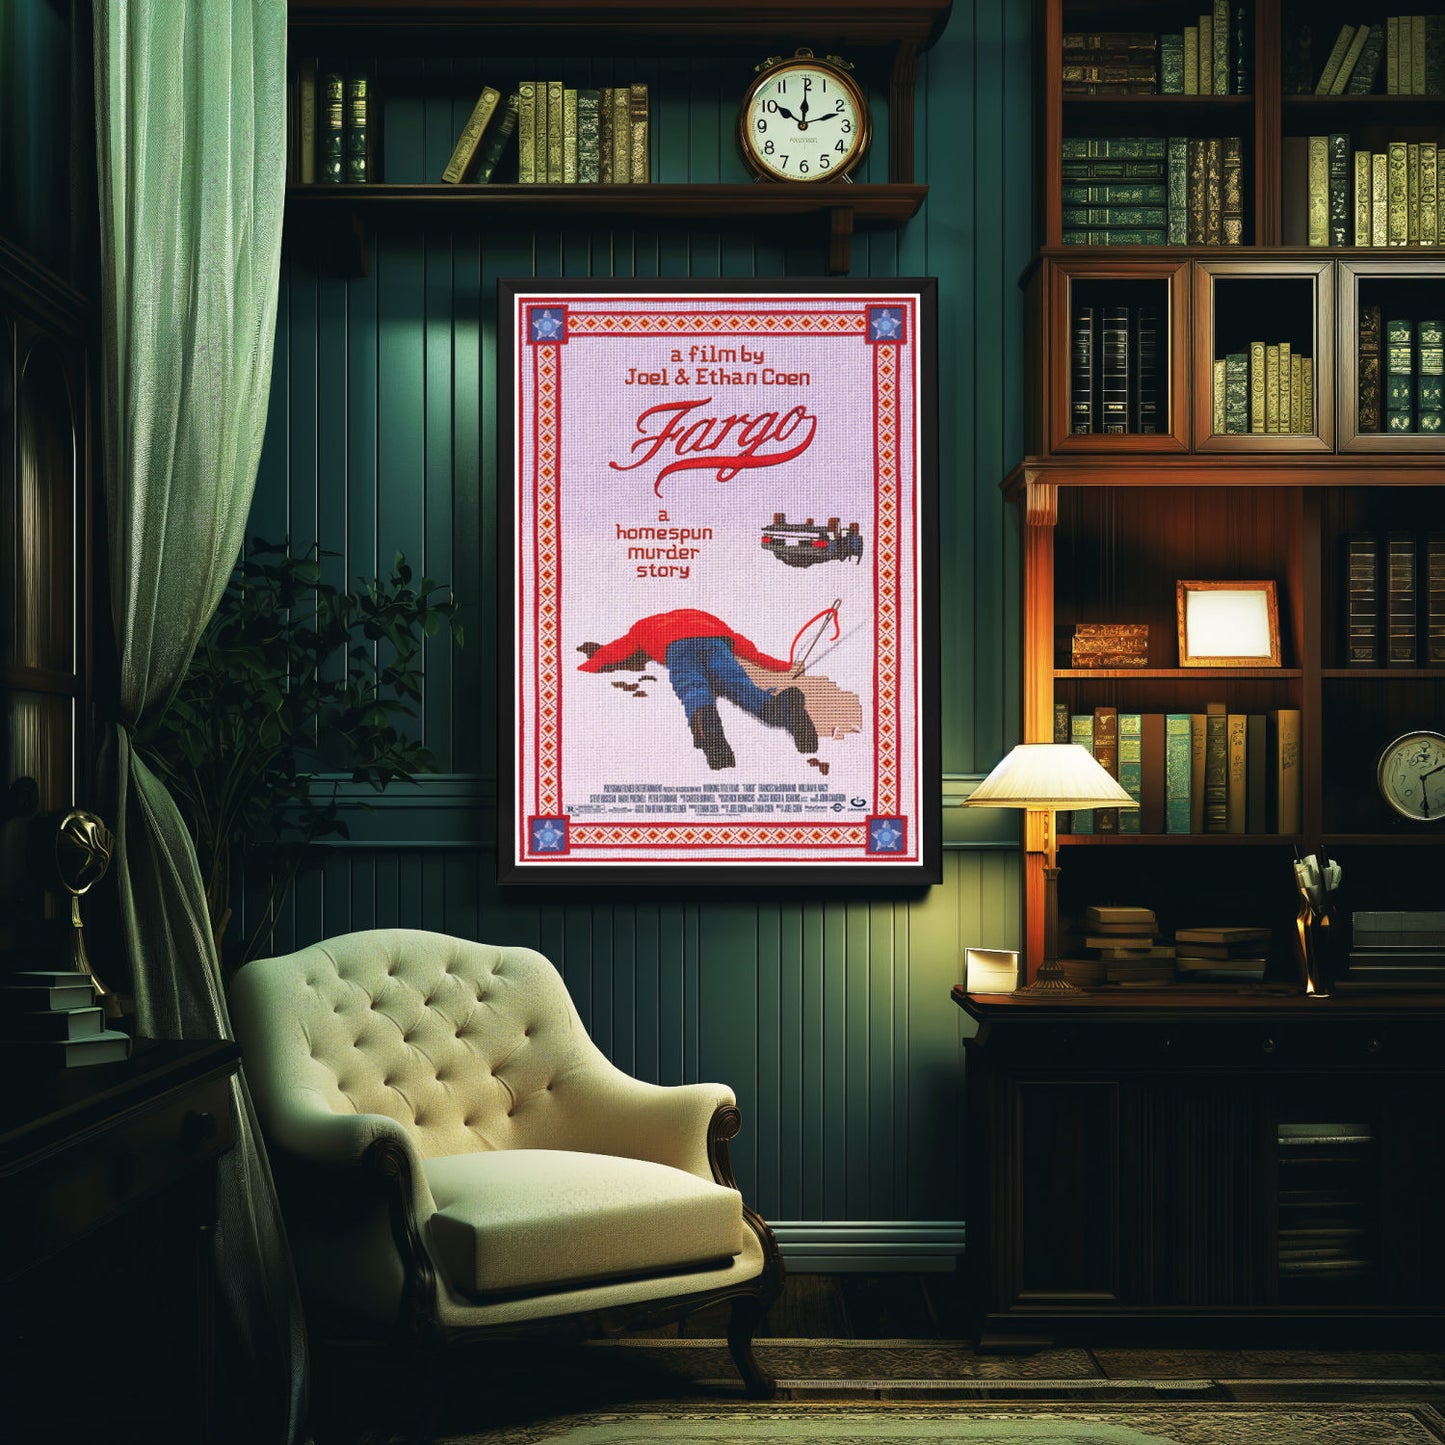 "Fargo" (1996) Framed Movie Poster